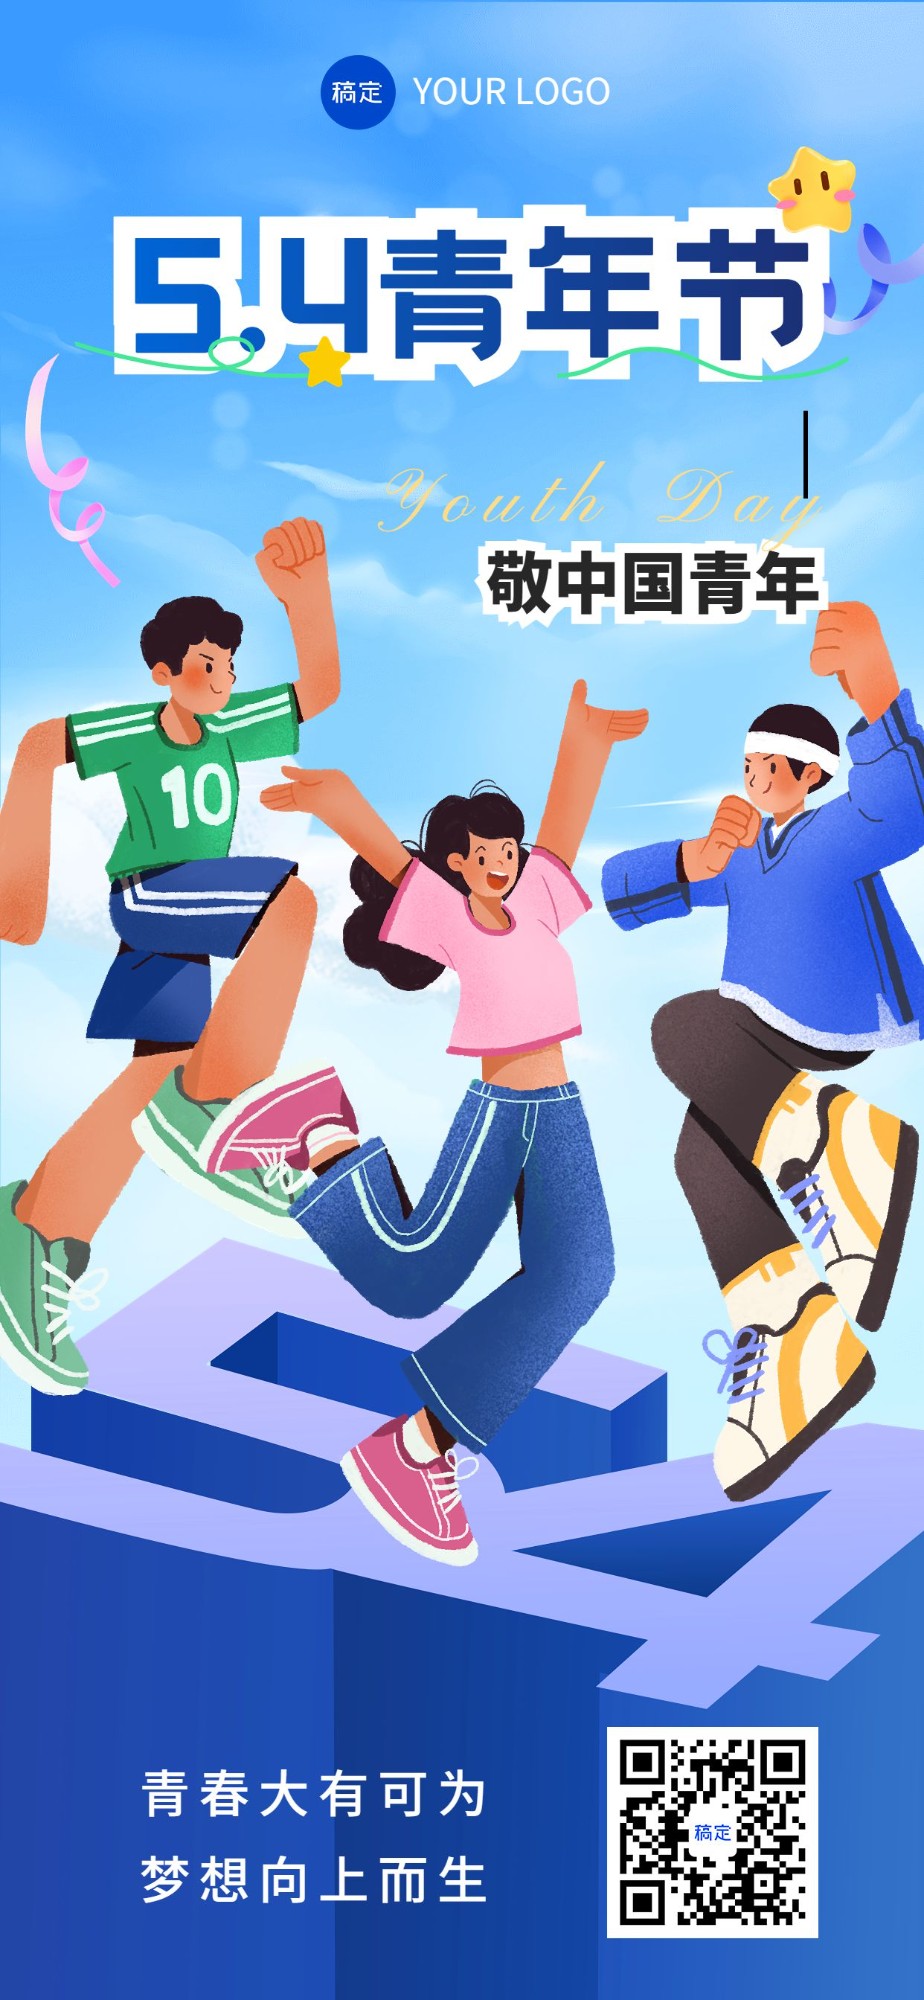 企业54青年节节日祝福插画风全屏竖版海报